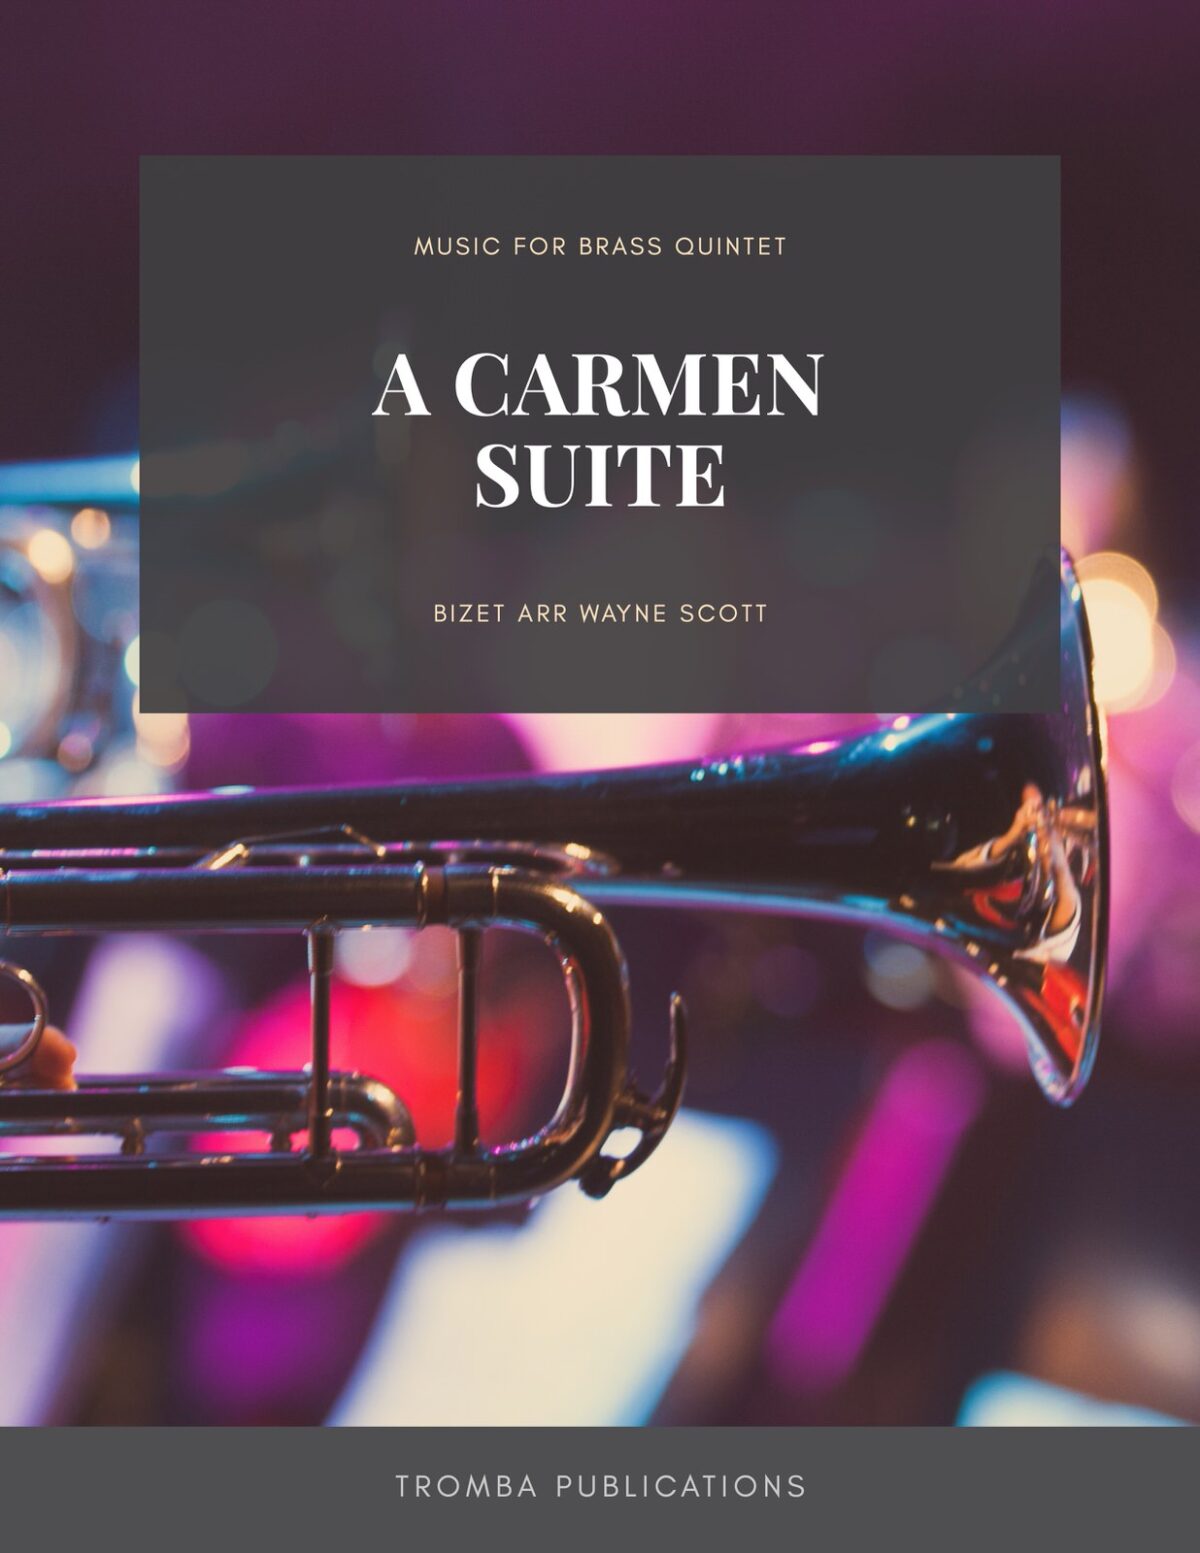 Brass Quintet Bundle Vol.1